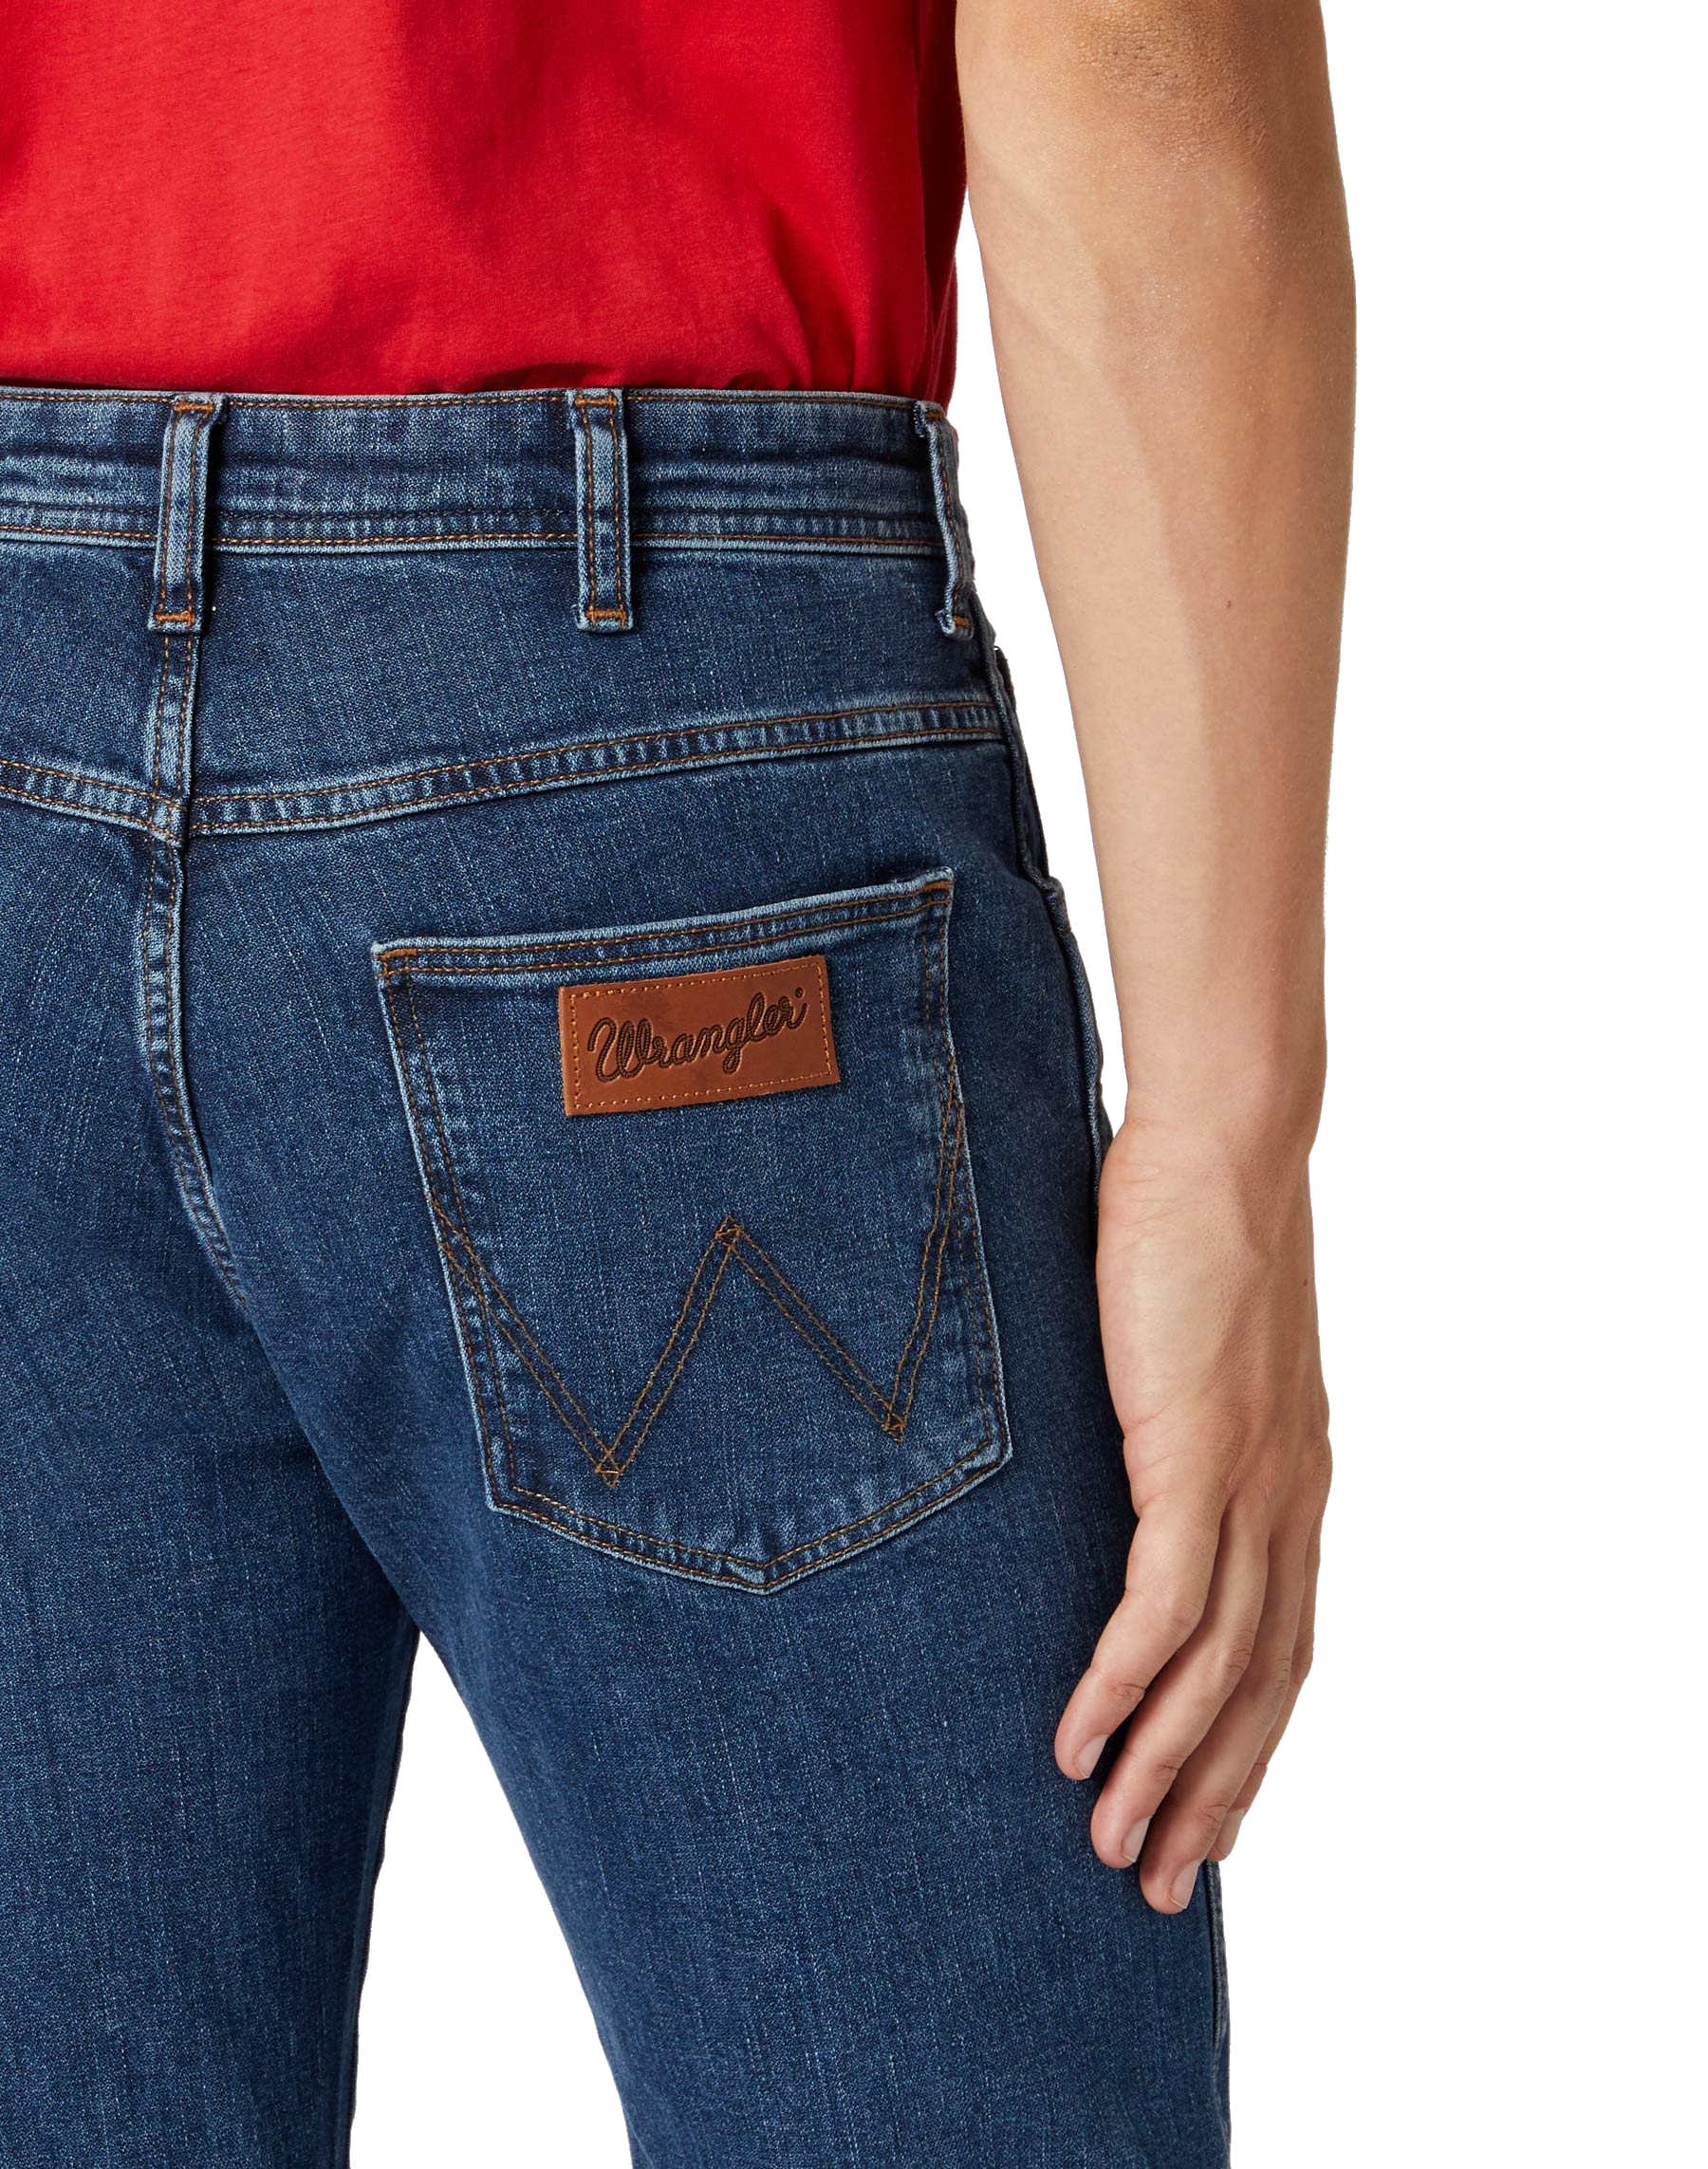 Wrangler Arizona Herren Herren Stretch Marken Damen ROLLING - Jeans und Hose ROCK online Jeans kaufen